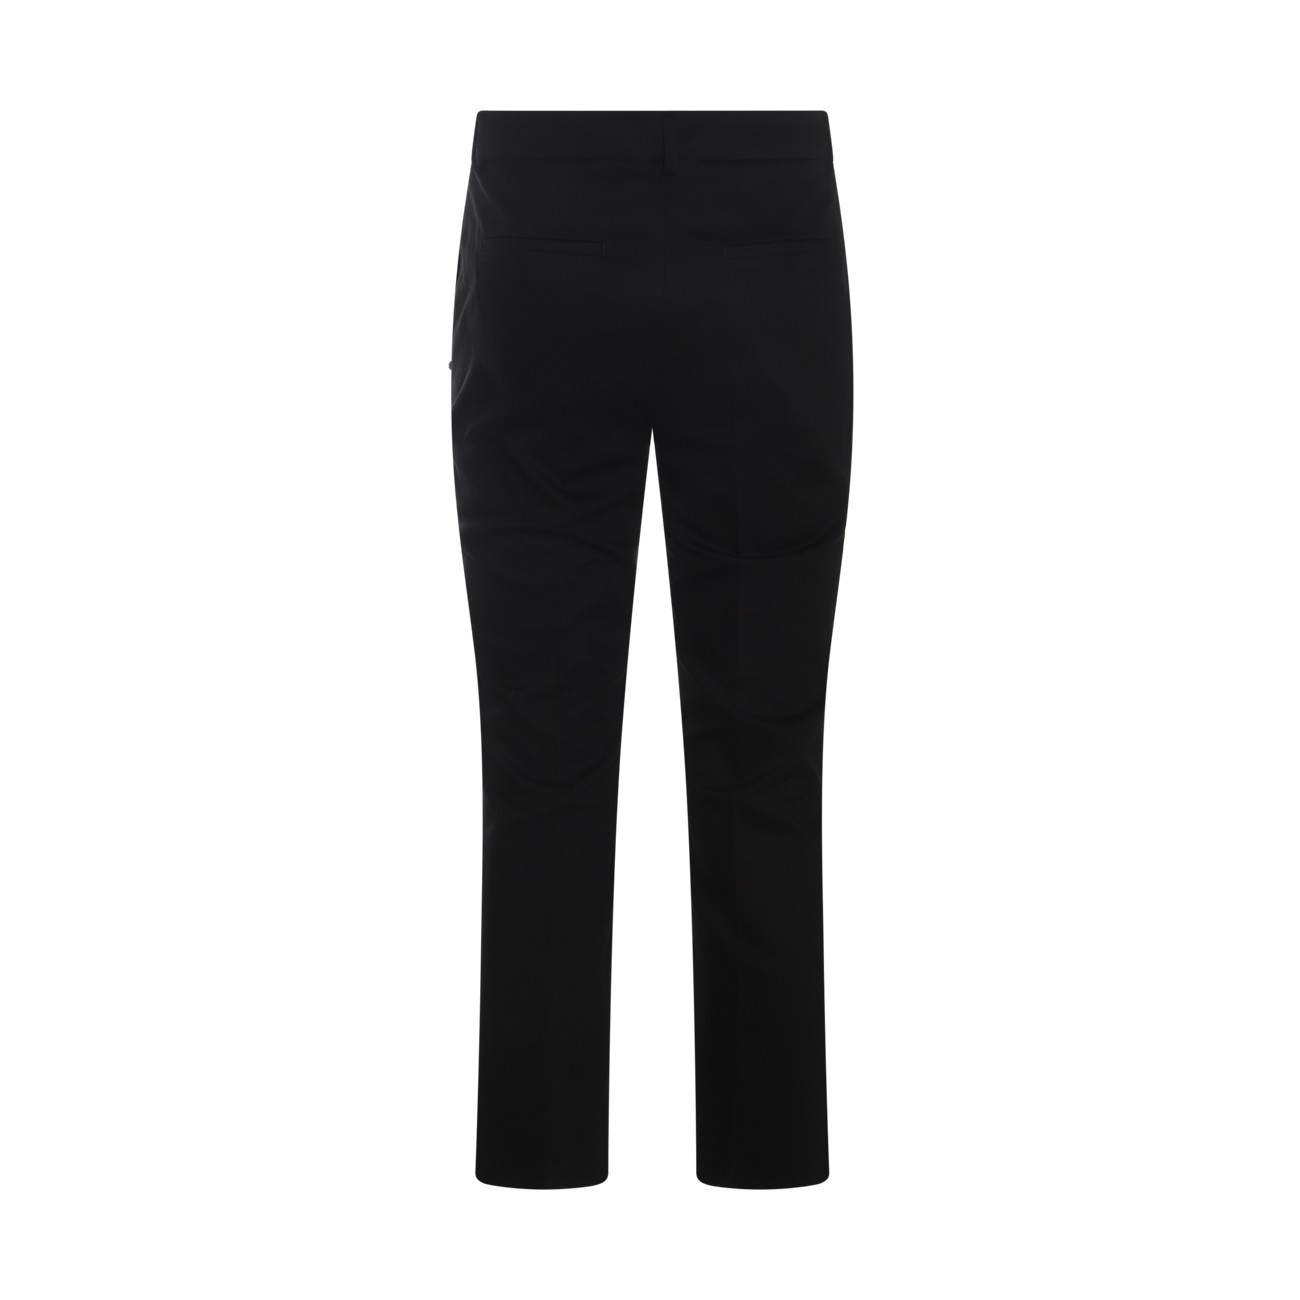 black cotton etna pants - 2